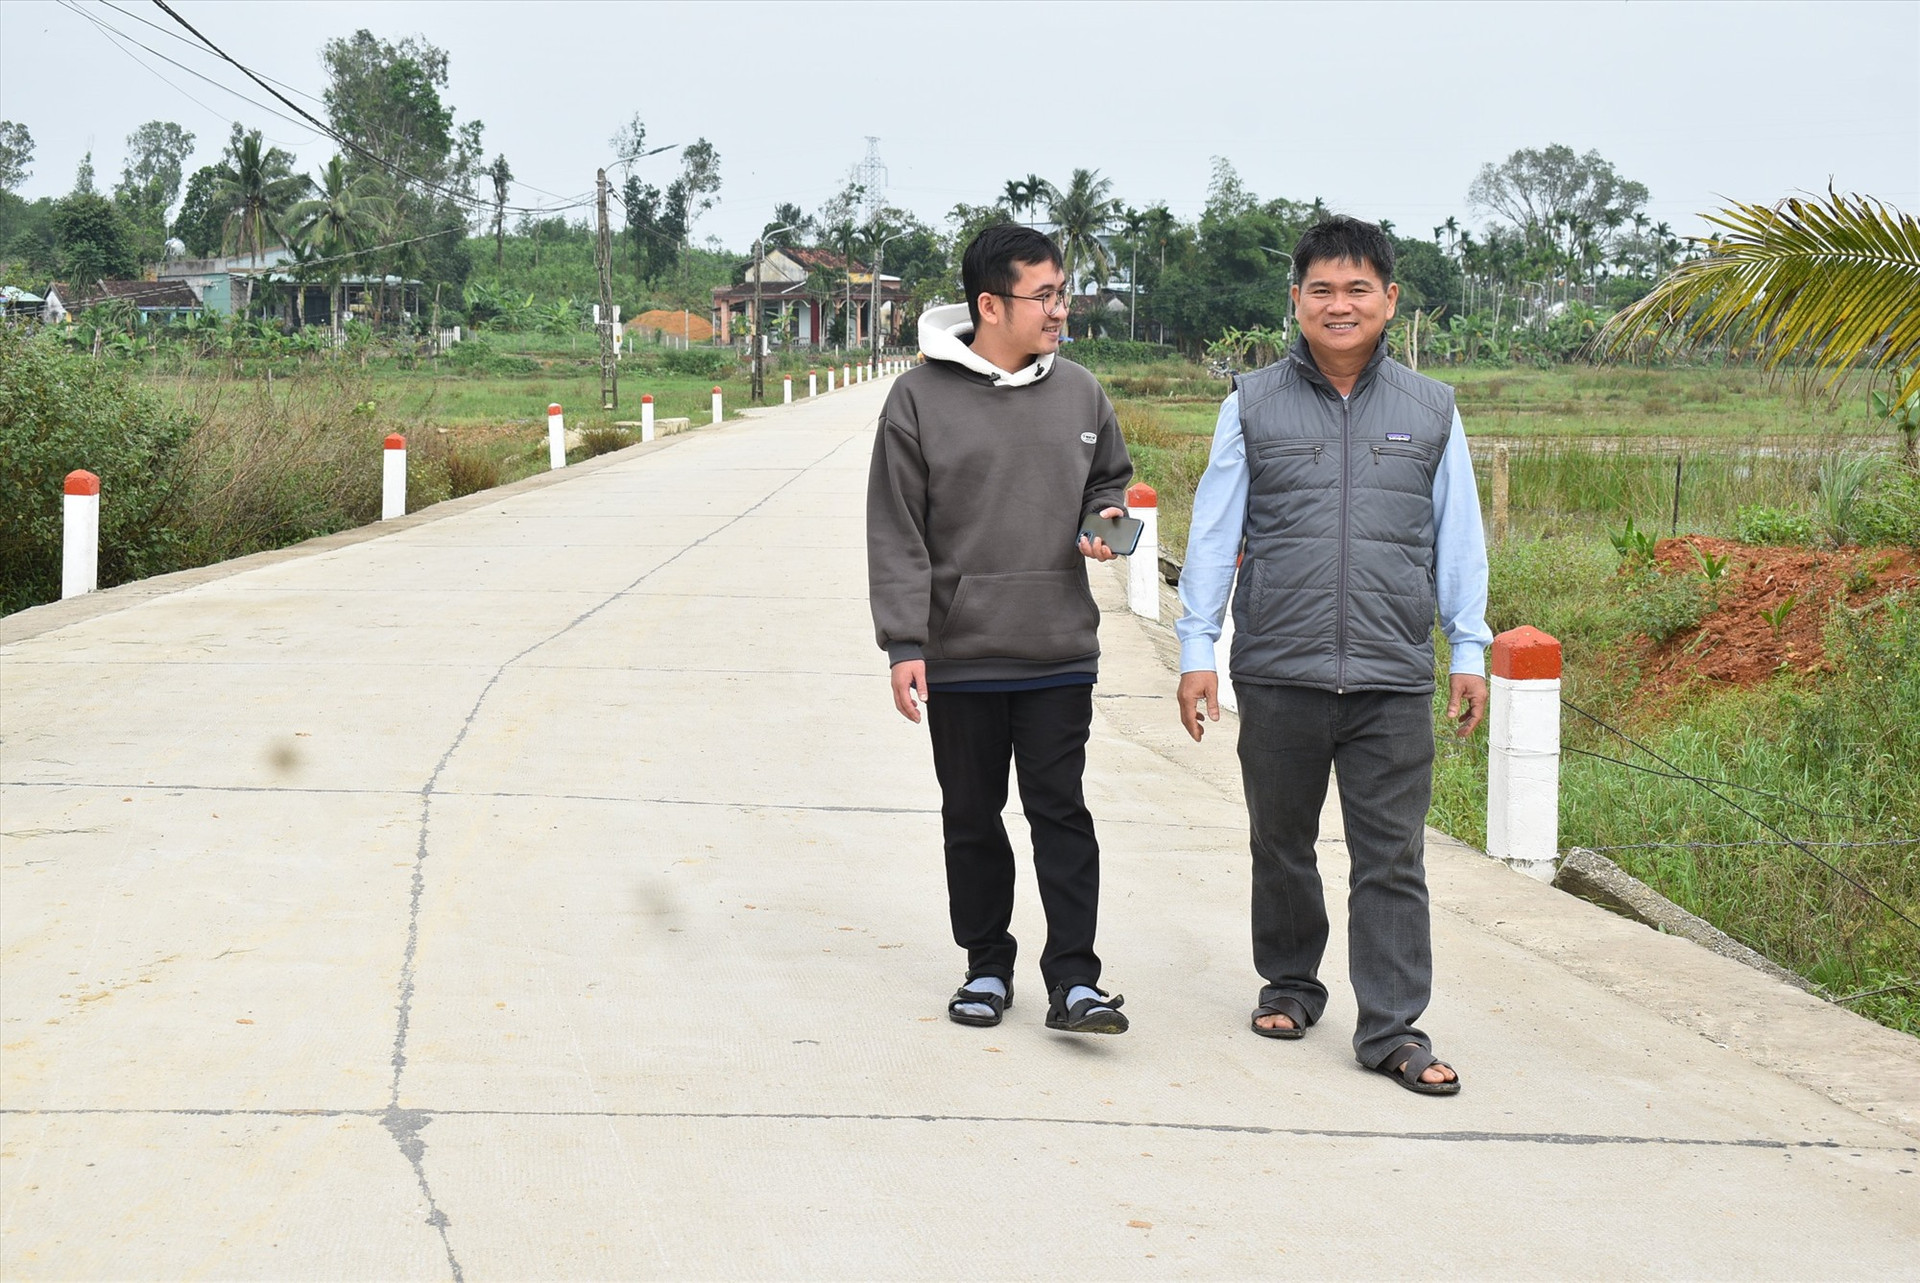 Đây là con đường bê tông ông Phong vận động nhân dân hiến đất để mở đường làng thông thoáng, rộng 9m. Ảnh: Q.H.H